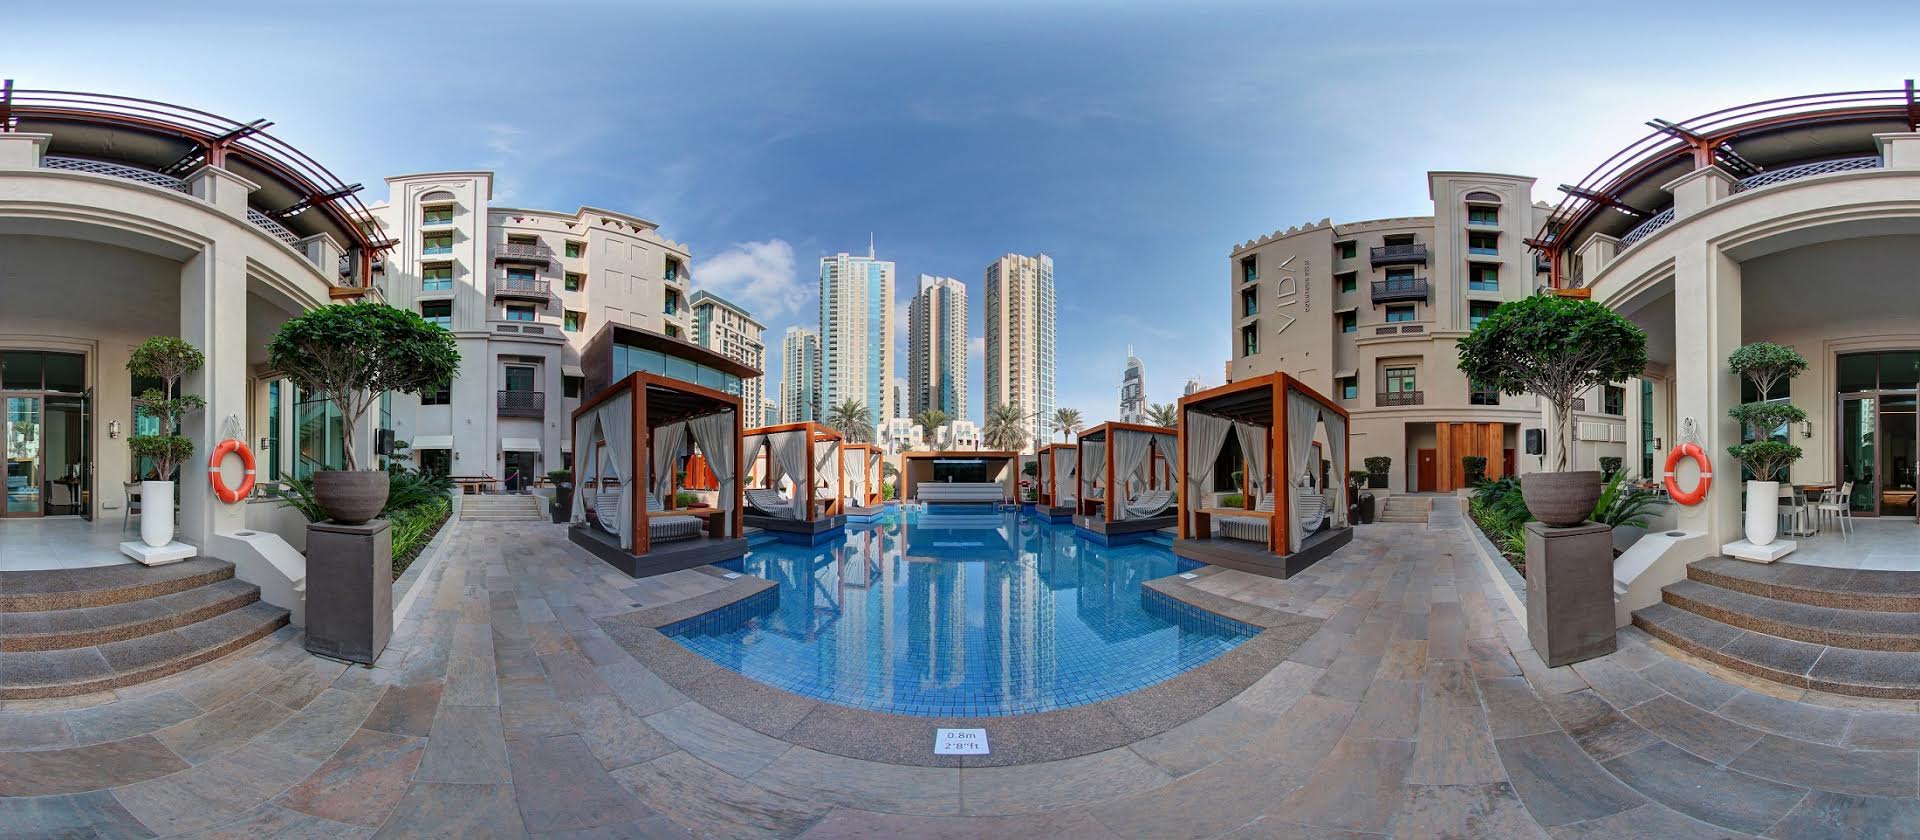 إعمار توفر جولات بانورامية افتراضية بزاوية 360 درجة لفنادقها في دبي